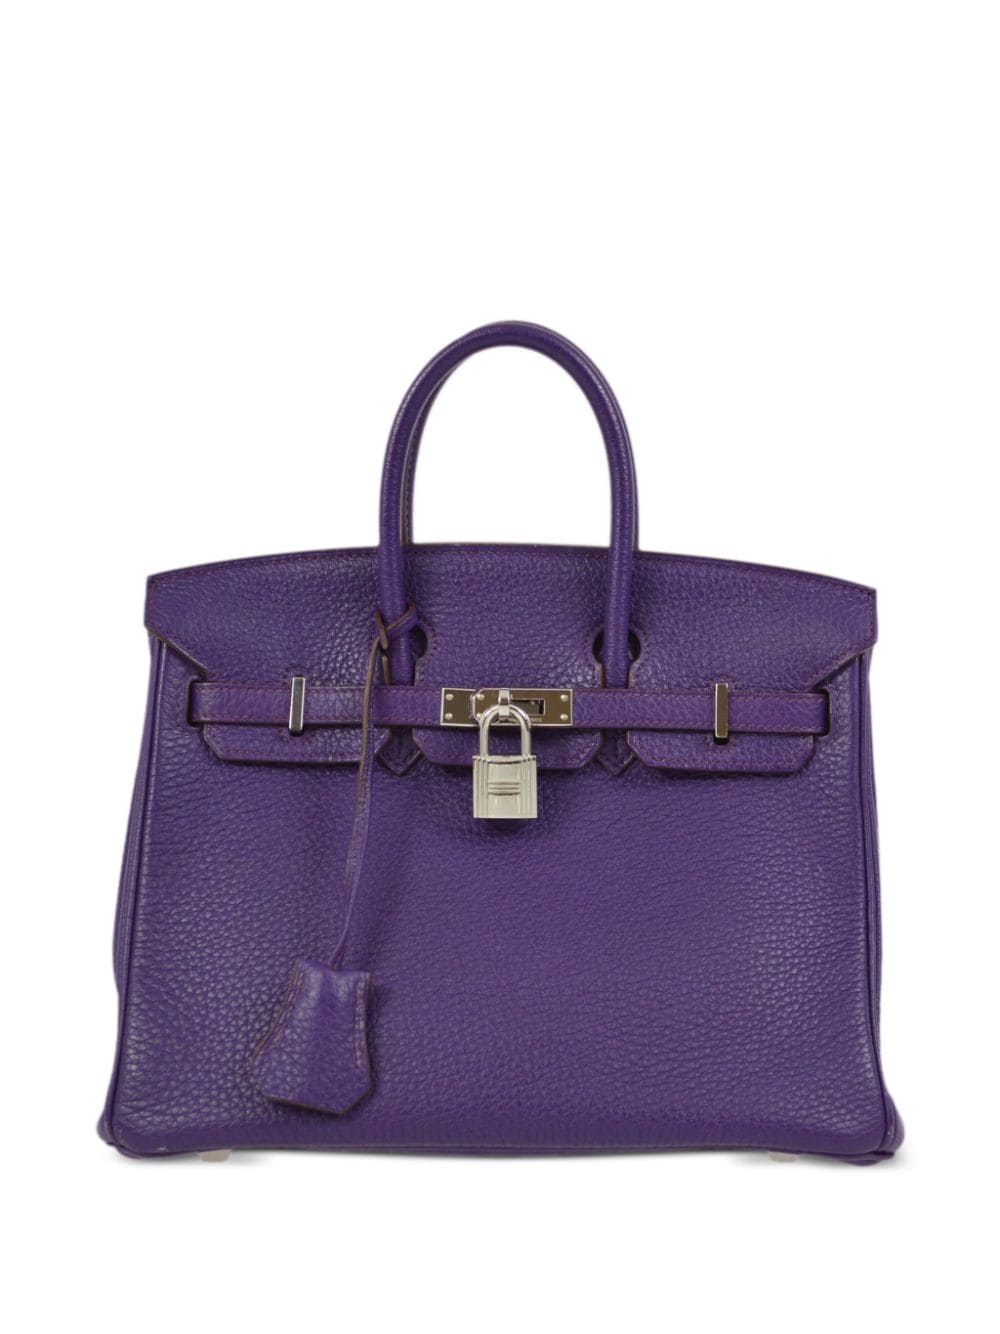 Hermès Pre-Owned 2010 Birkin Handtasche 25cm - Violett von Hermès Pre-Owned